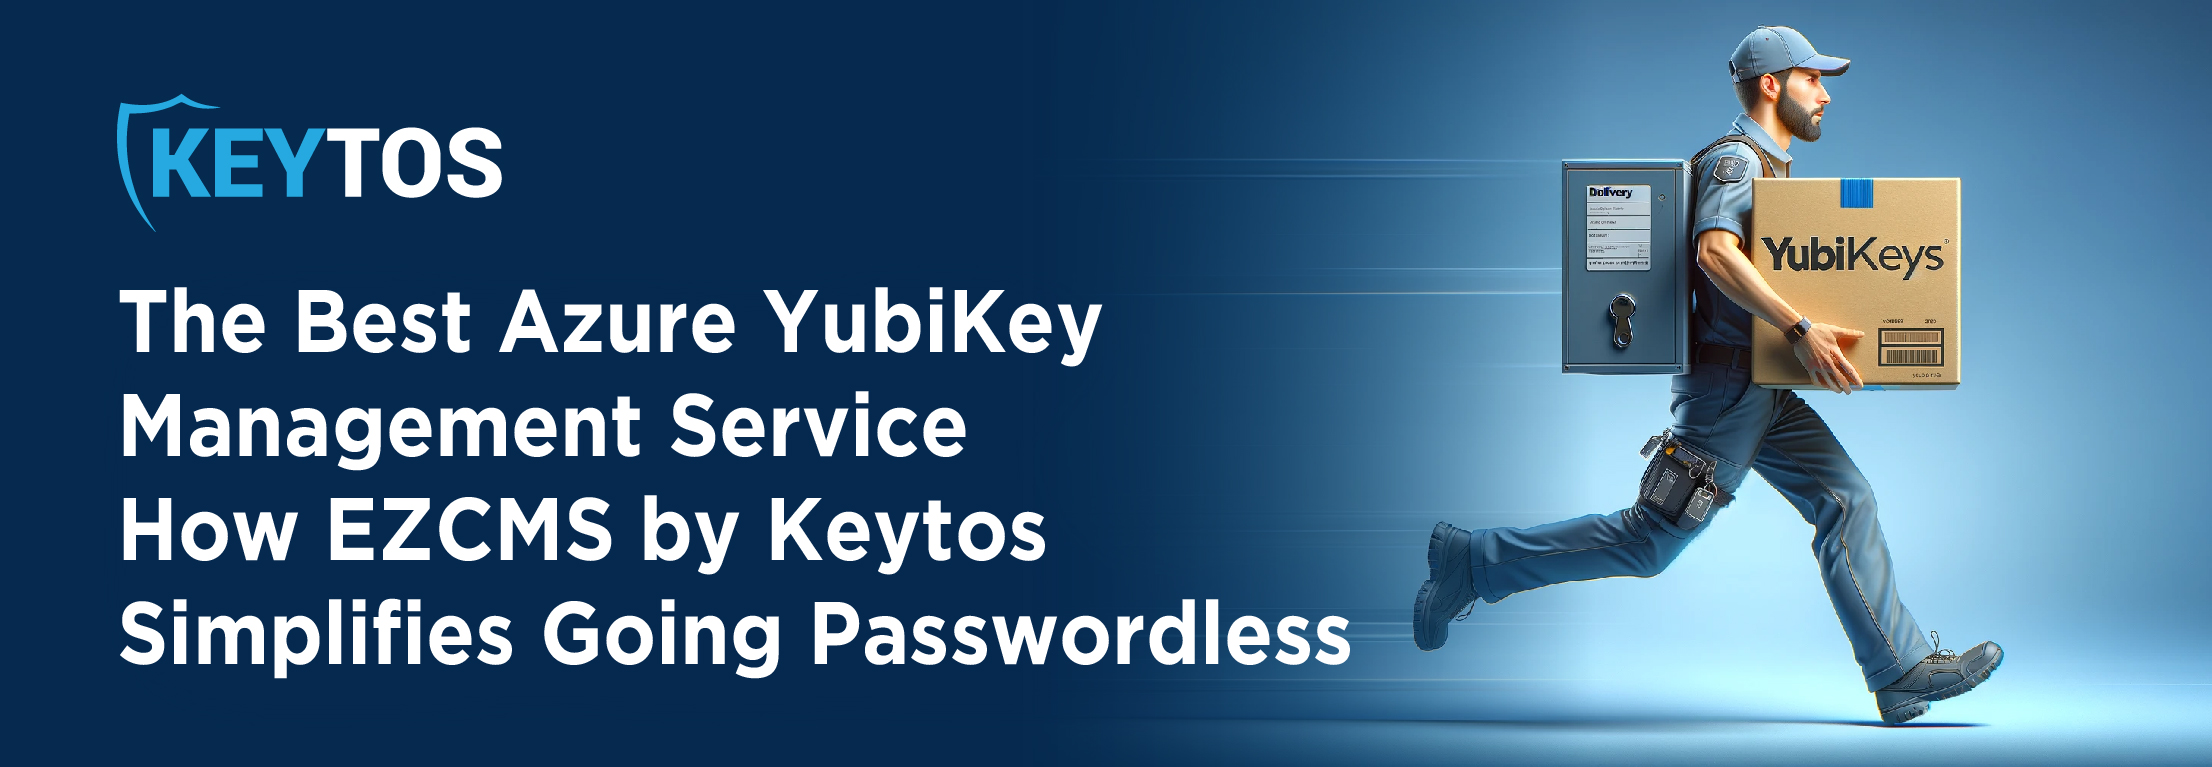 Como enviar YubiKeys a nivel mundial con facilidad e implementar autenticación sin contraseña para usuarios remotos